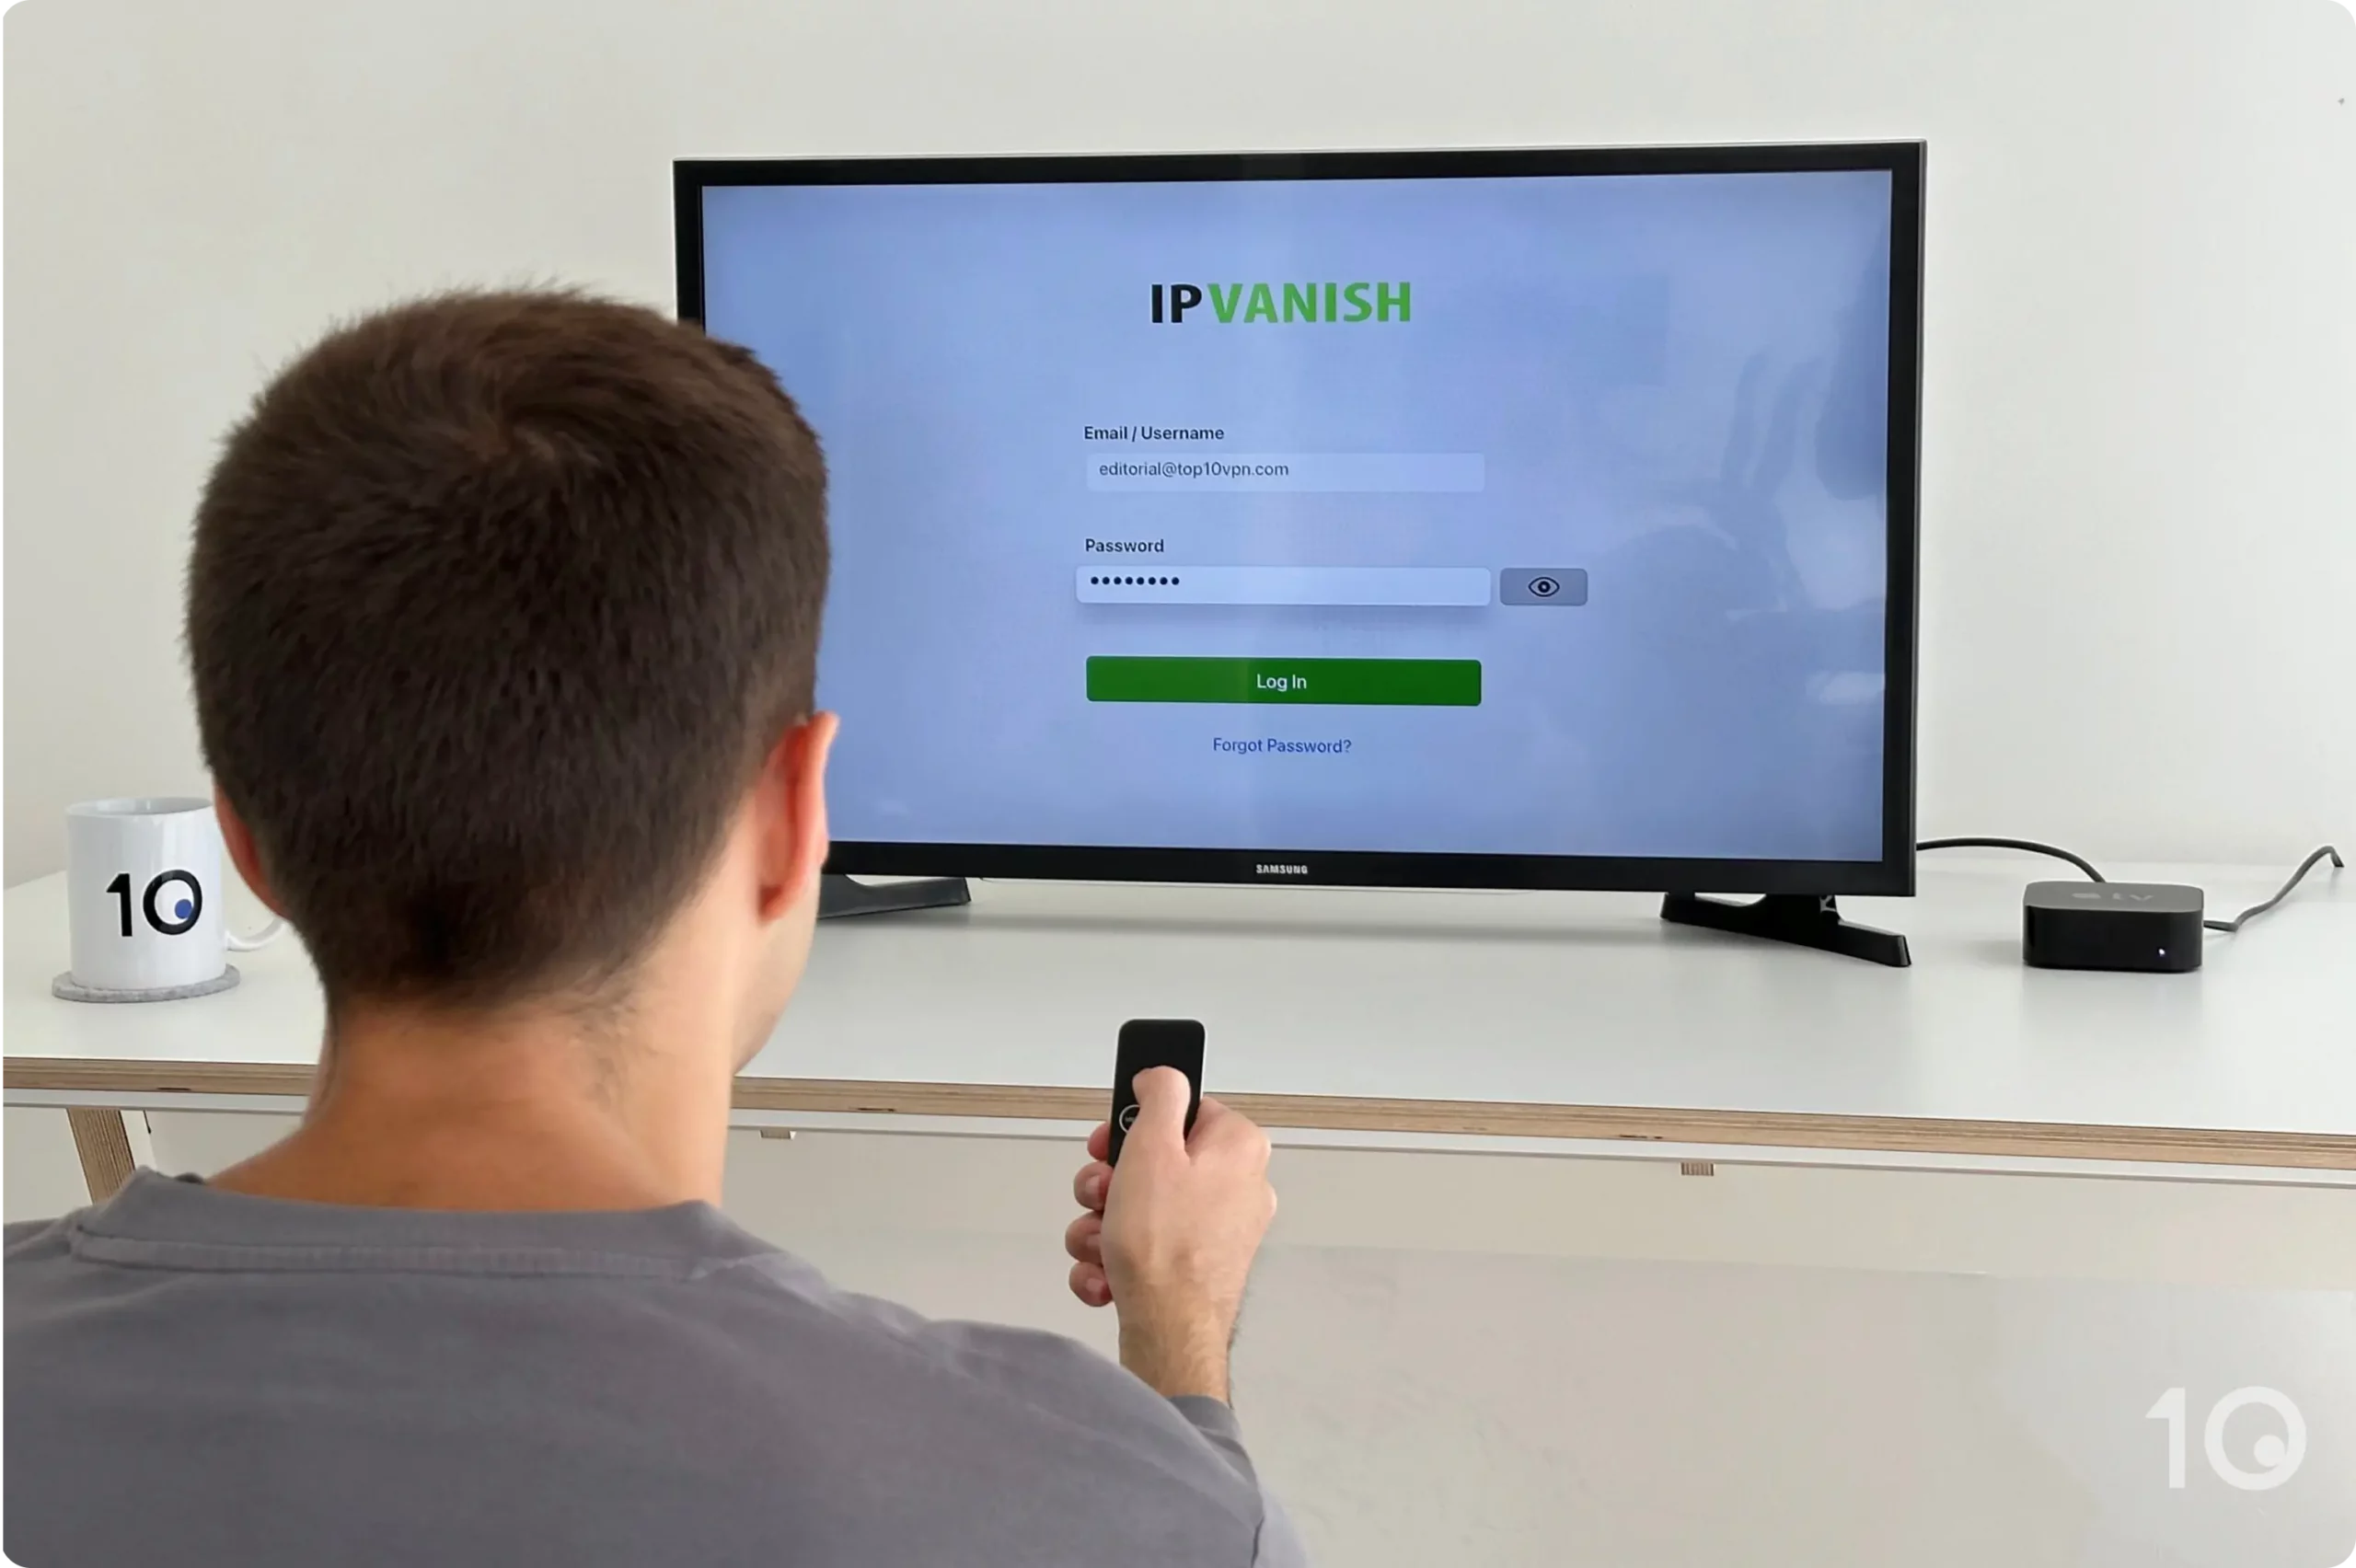 Using IPVanish's tvOS app